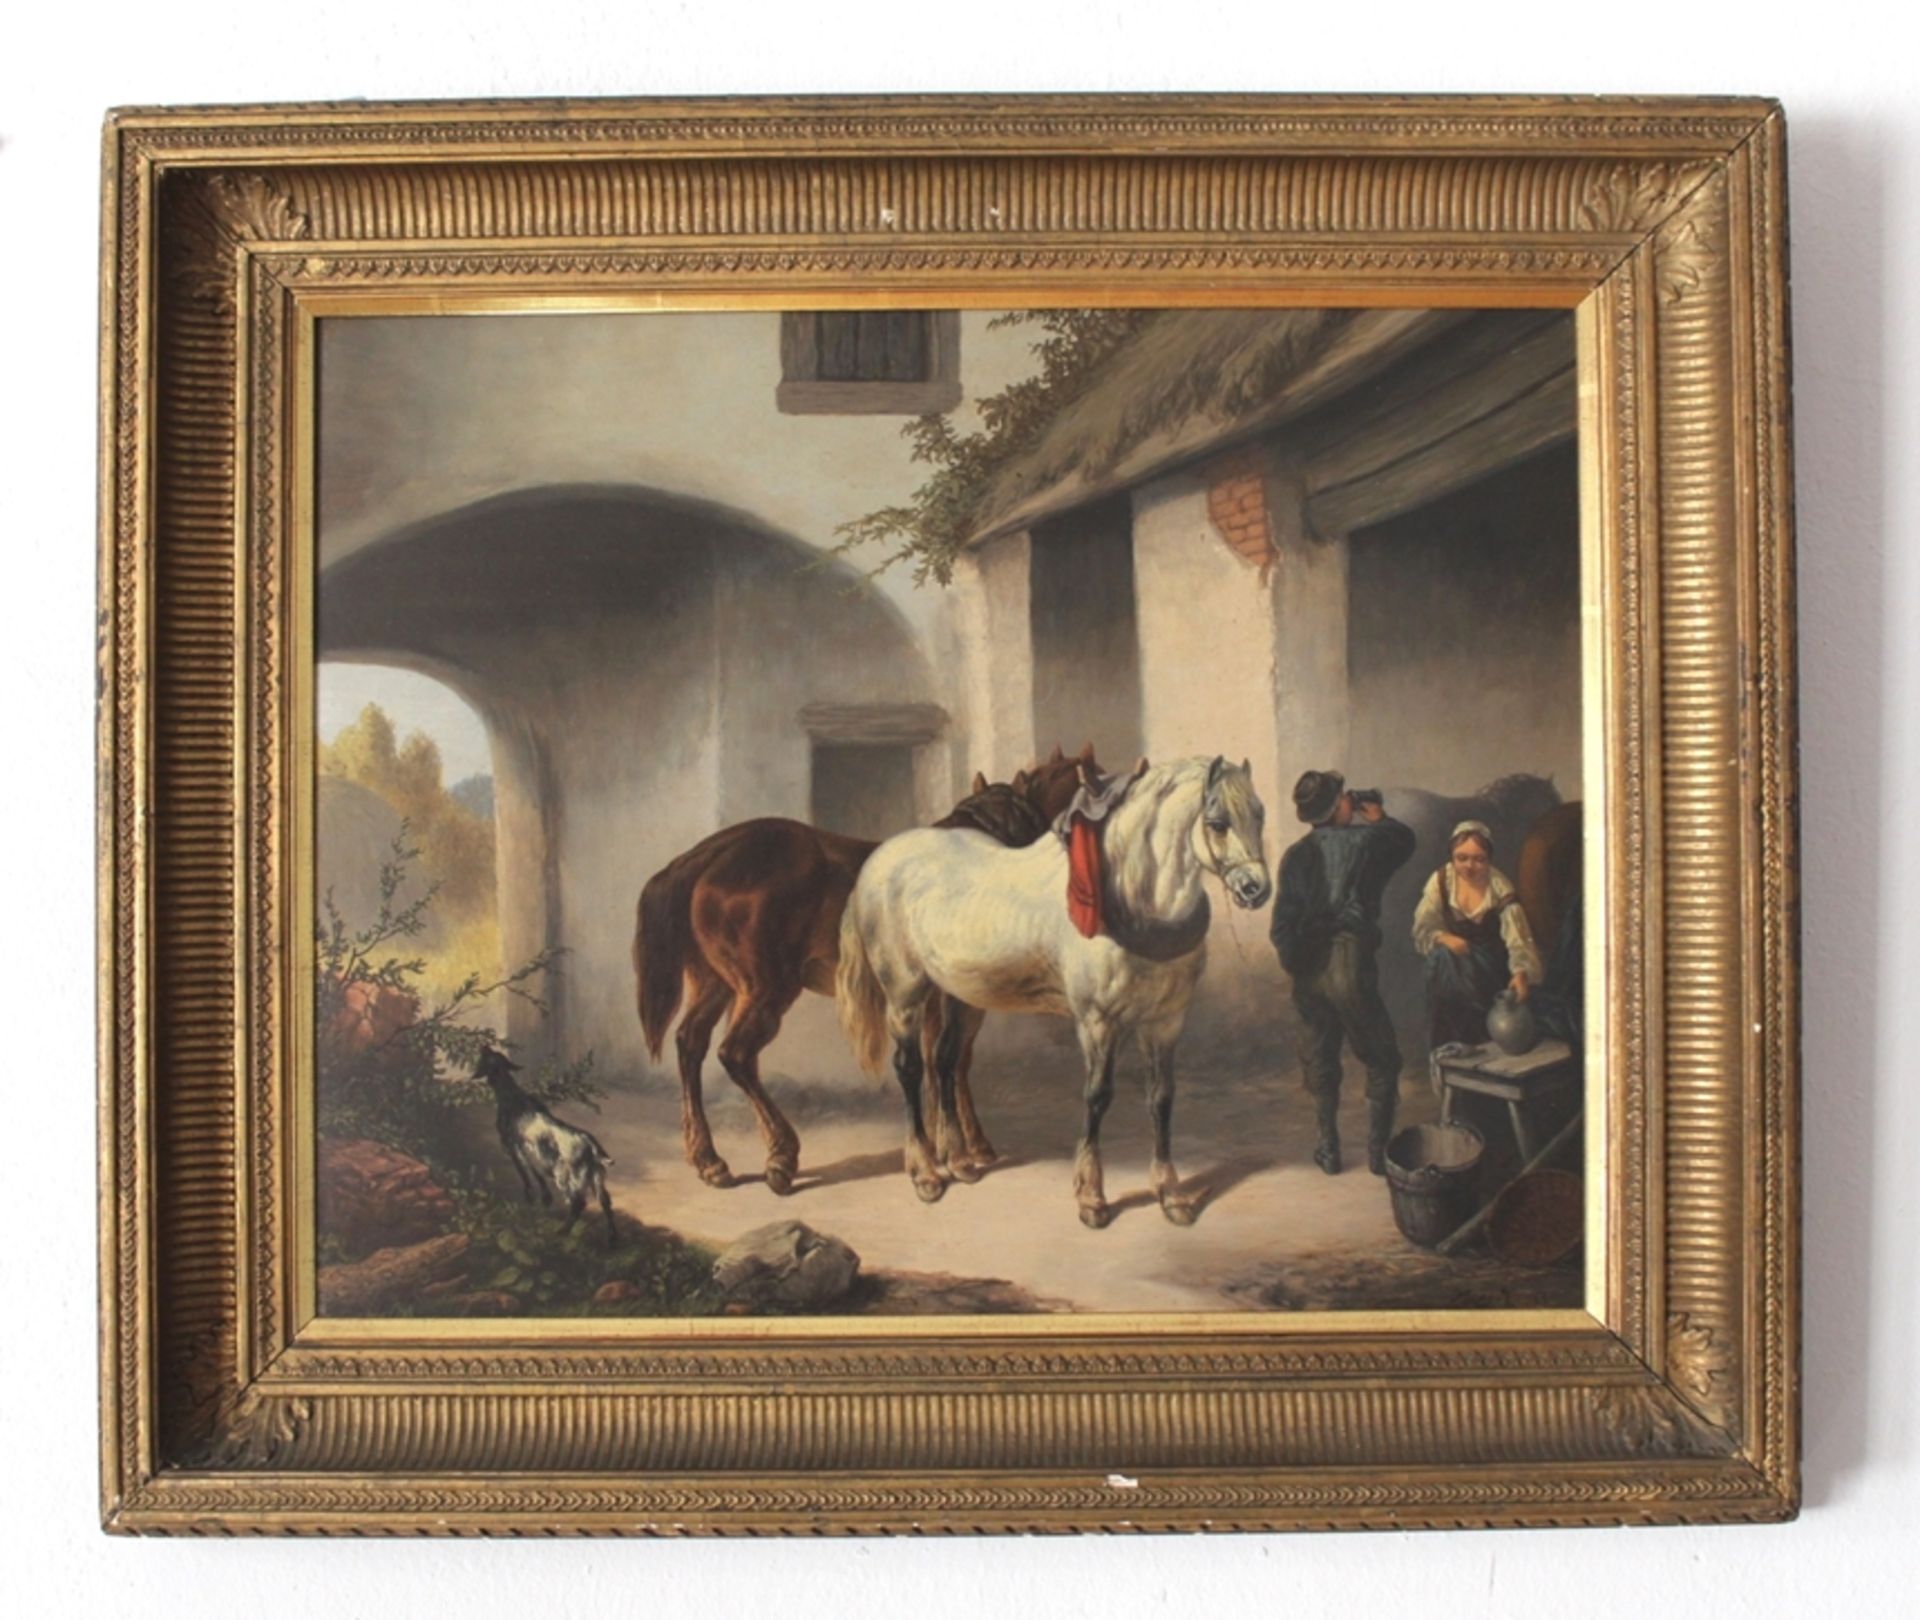 Gemälde Öl auf Panel "Hofszene mit zwei Pferden", Künstler: Franz Krauss, HSZ 1890-1905, Signiert, 